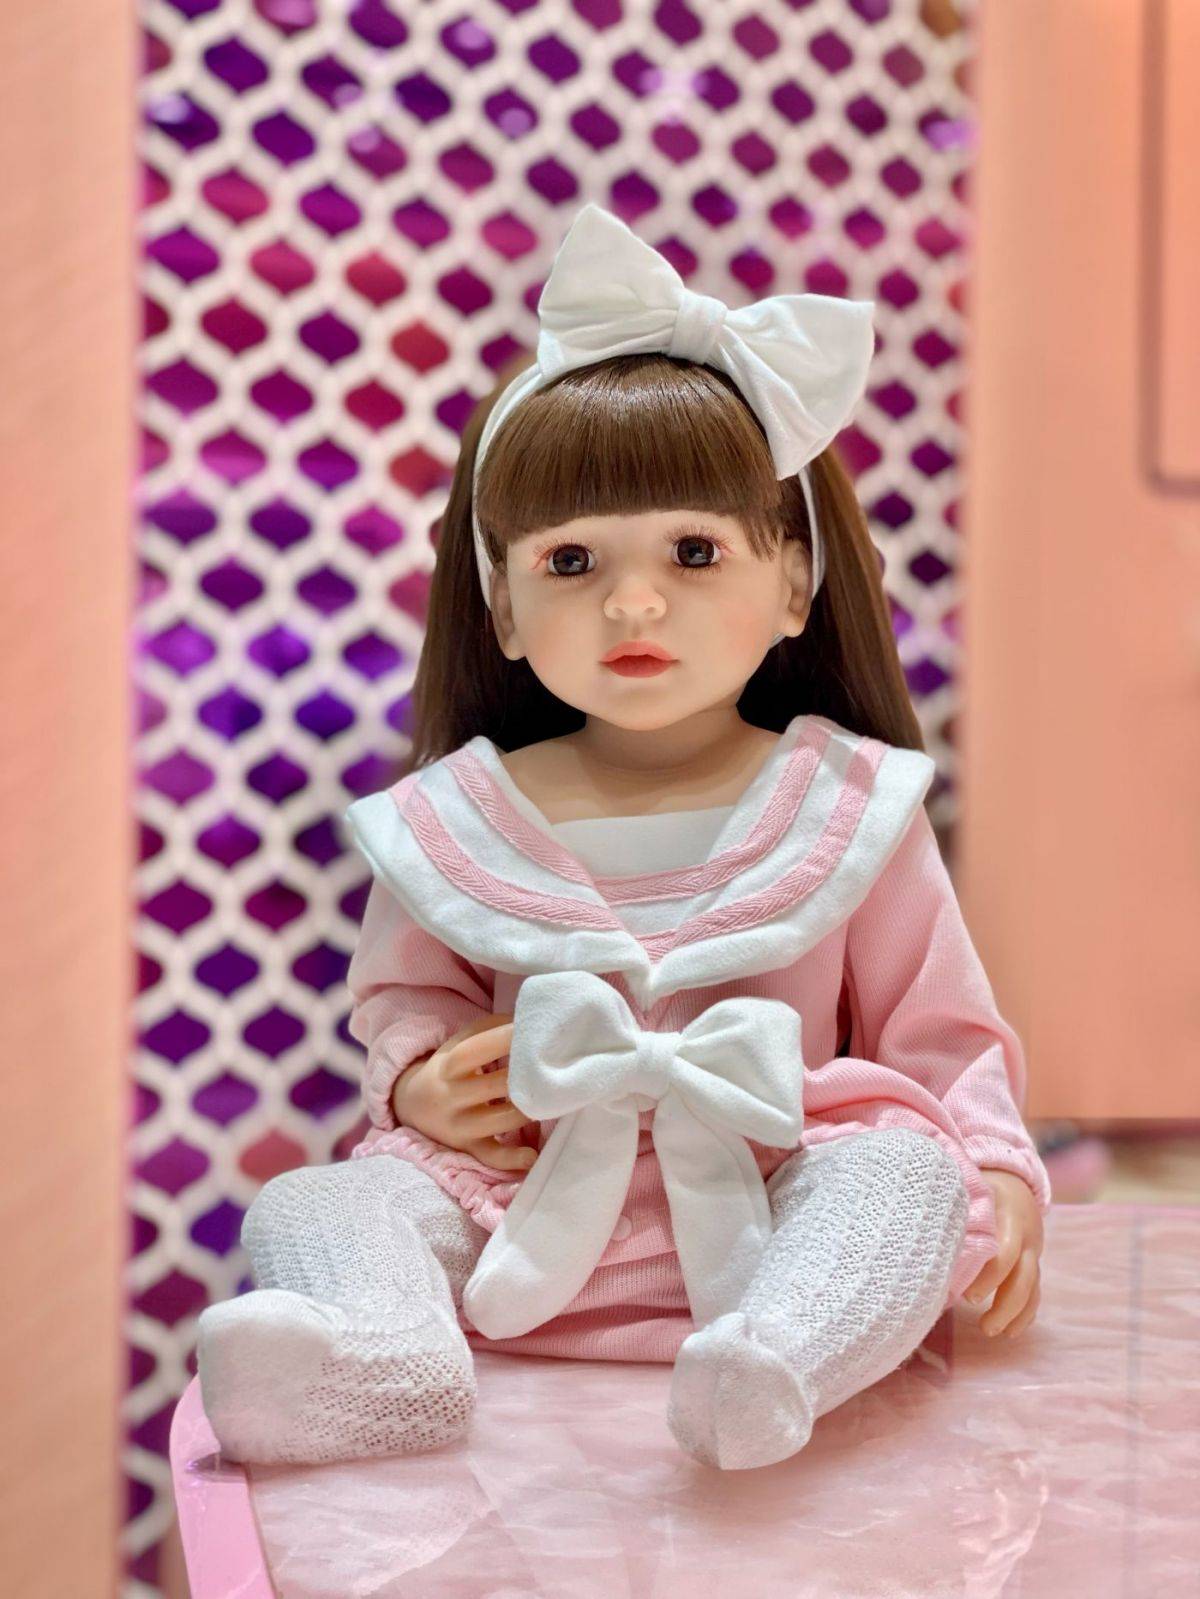 בובות תינוקות Reborn סיליקון חמוד רך בובות תינוקות אופנה Bebe Reborn בובות 55 ס"מ צעצועי תינוקות לילדות (10)